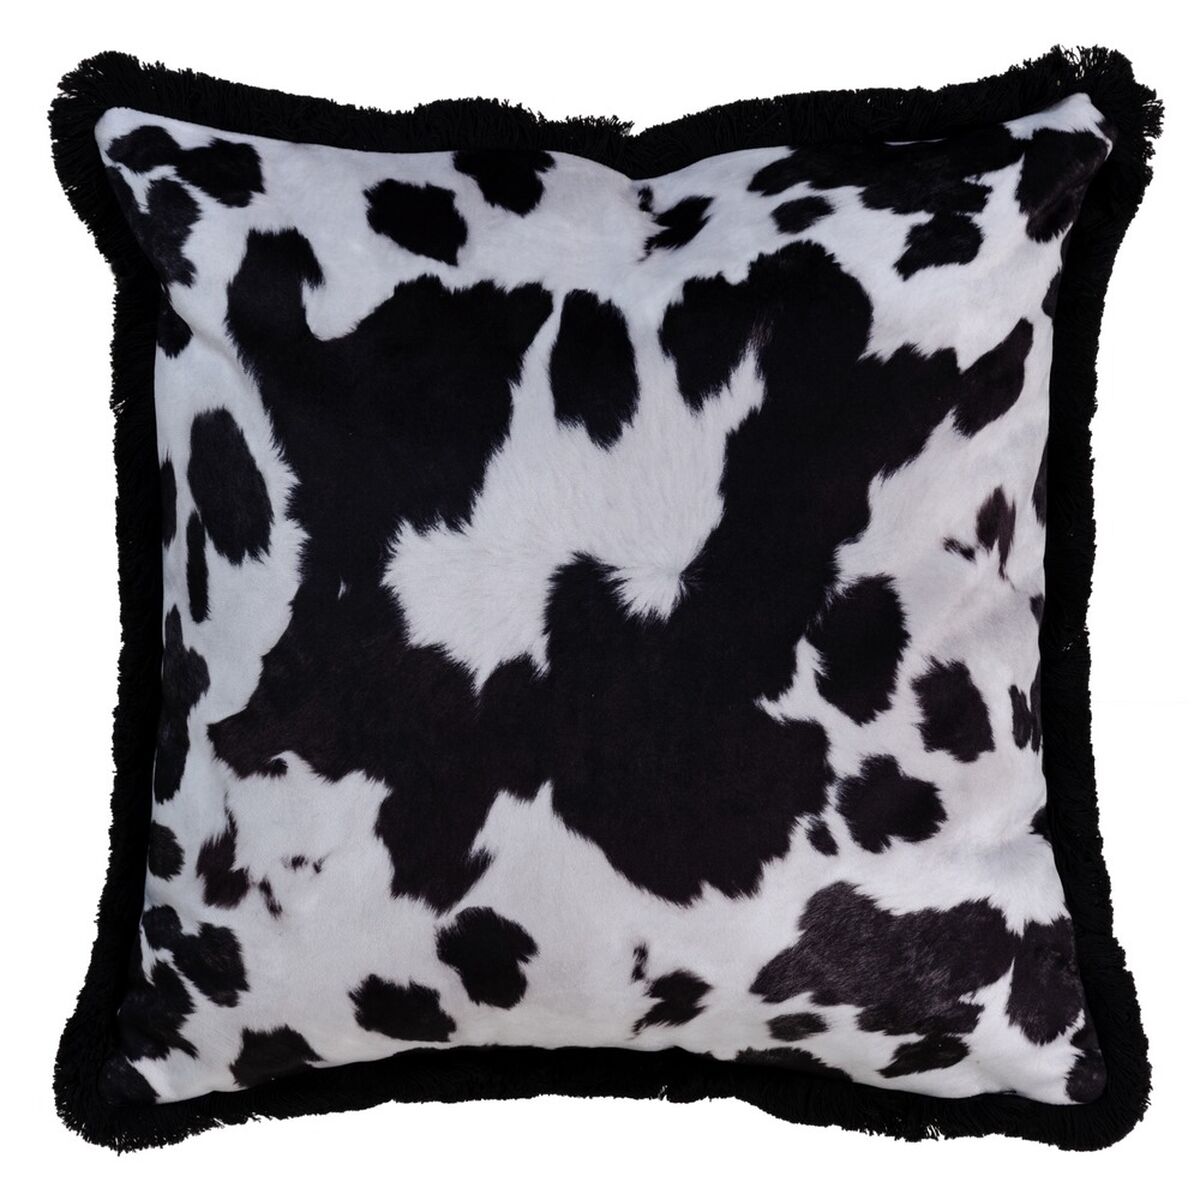 Cushion Cow 45 x 45 cm